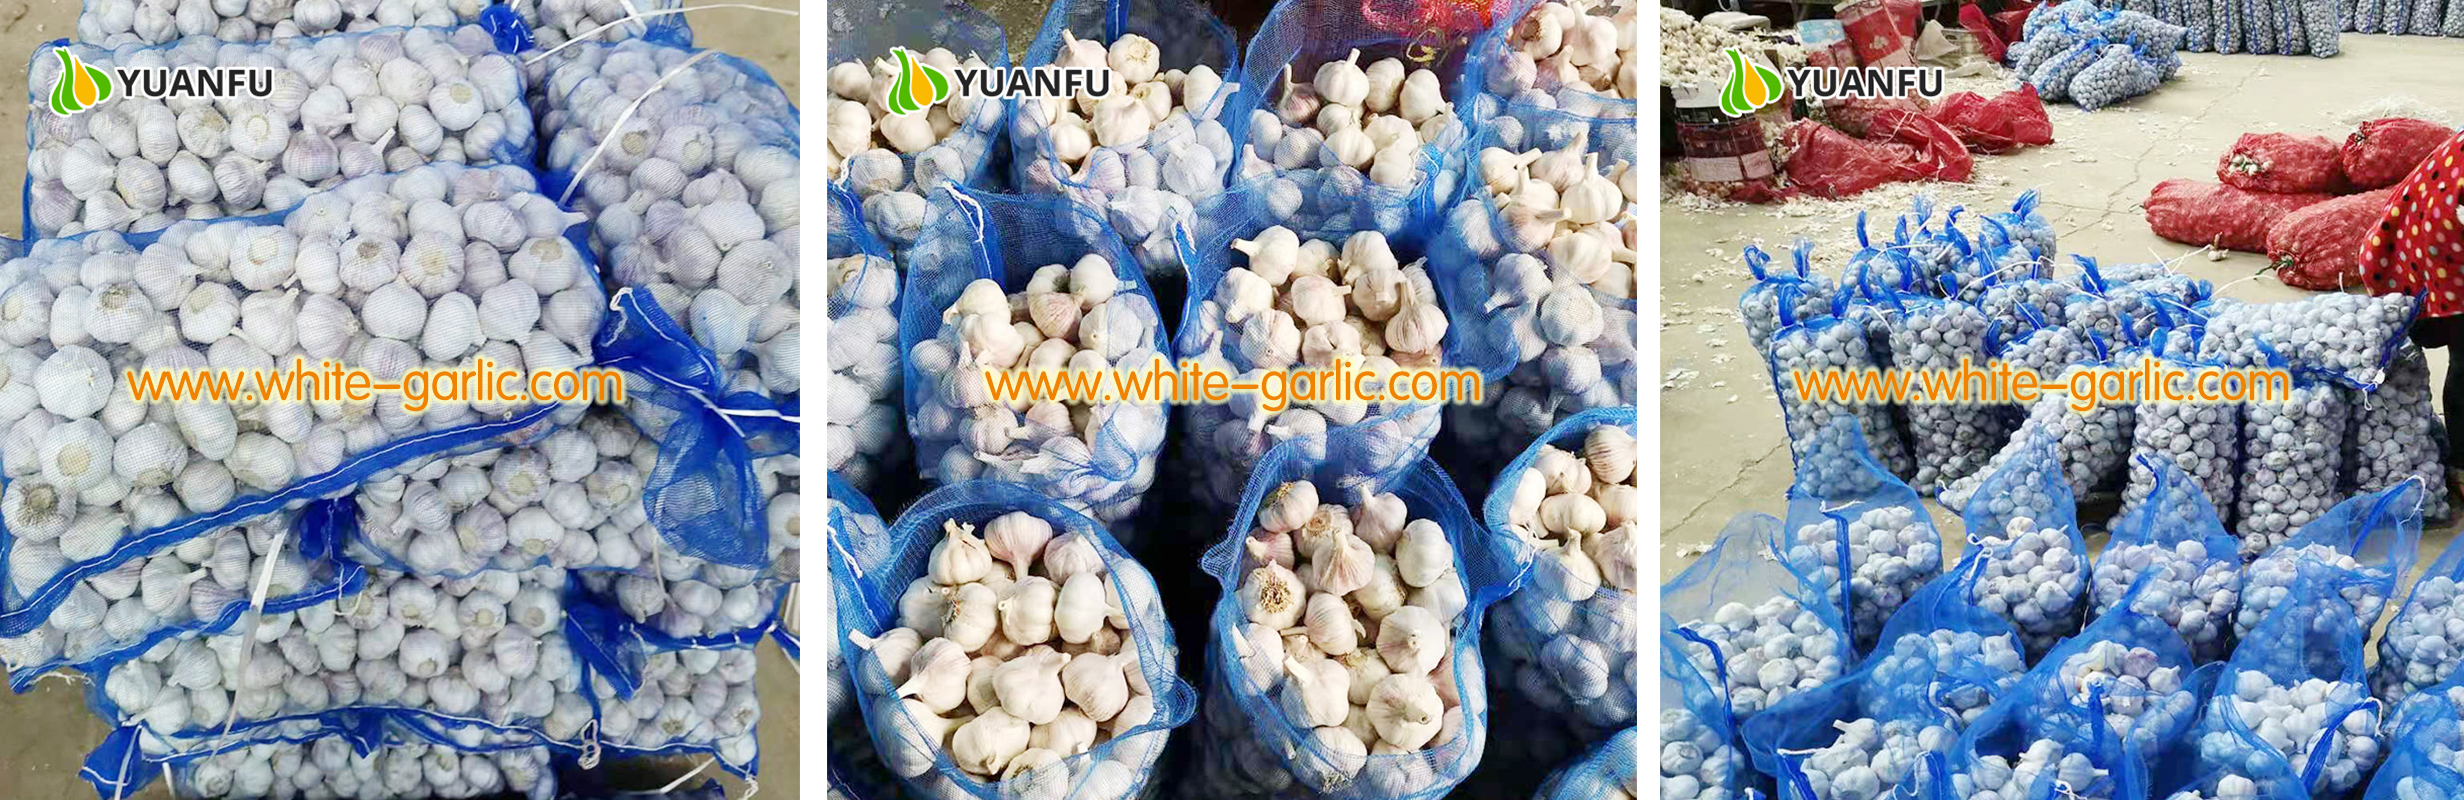 garlic sellers